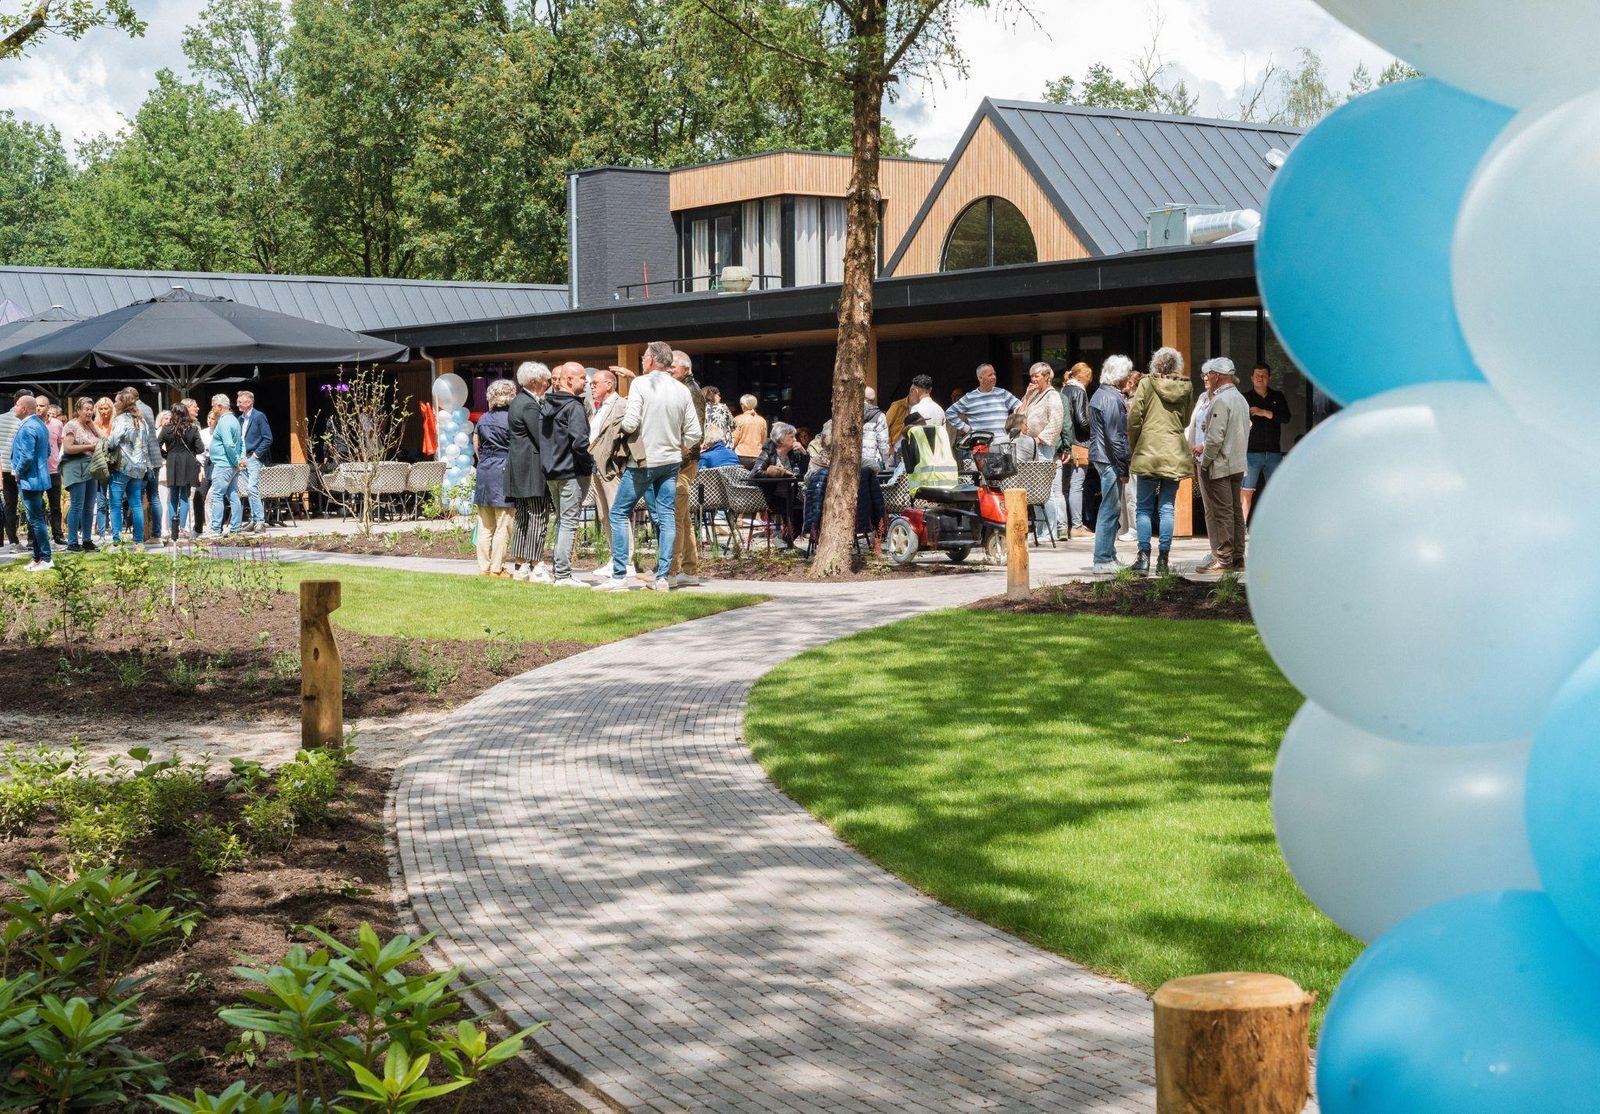 Nieuw vakantiepark Resort de Brabantse Kempen geopend